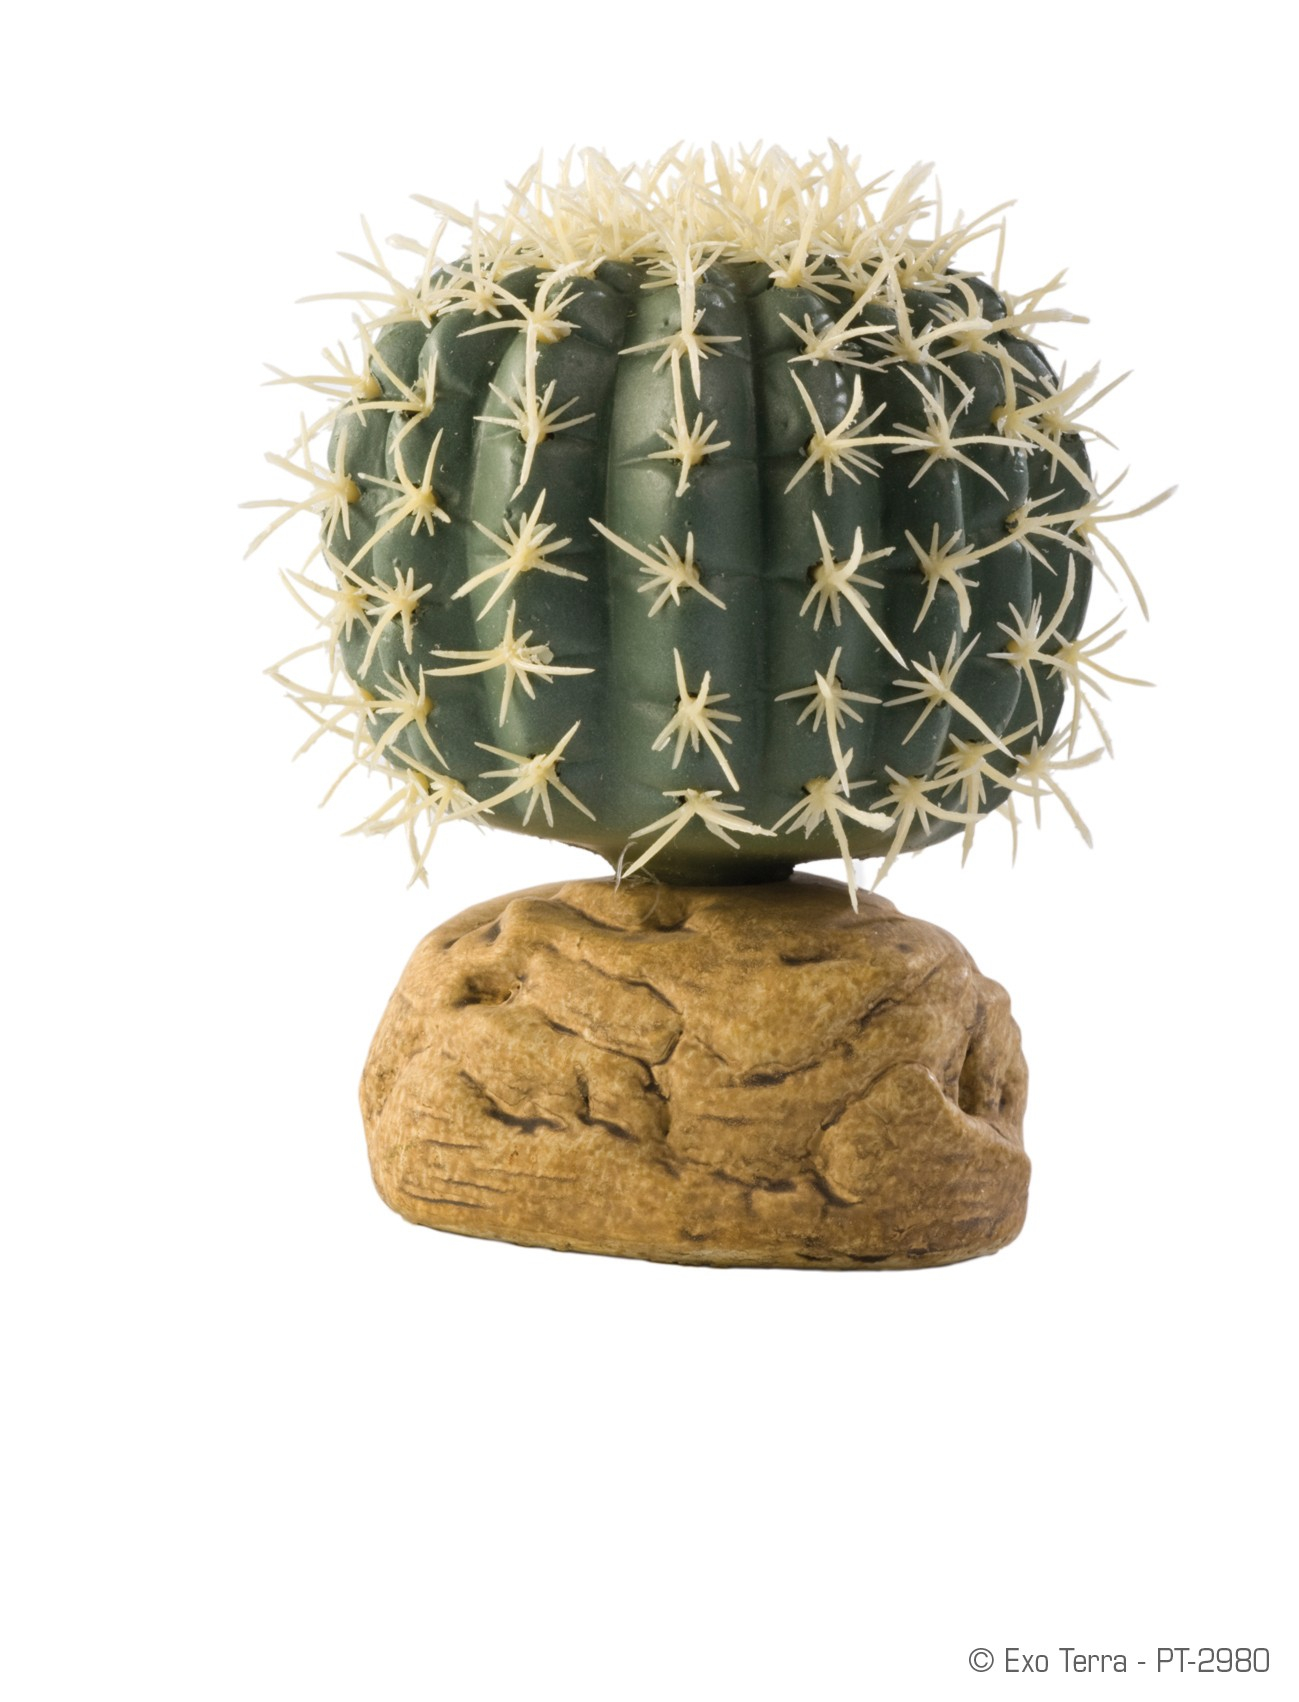 Igel-Kaktus Exo Terra